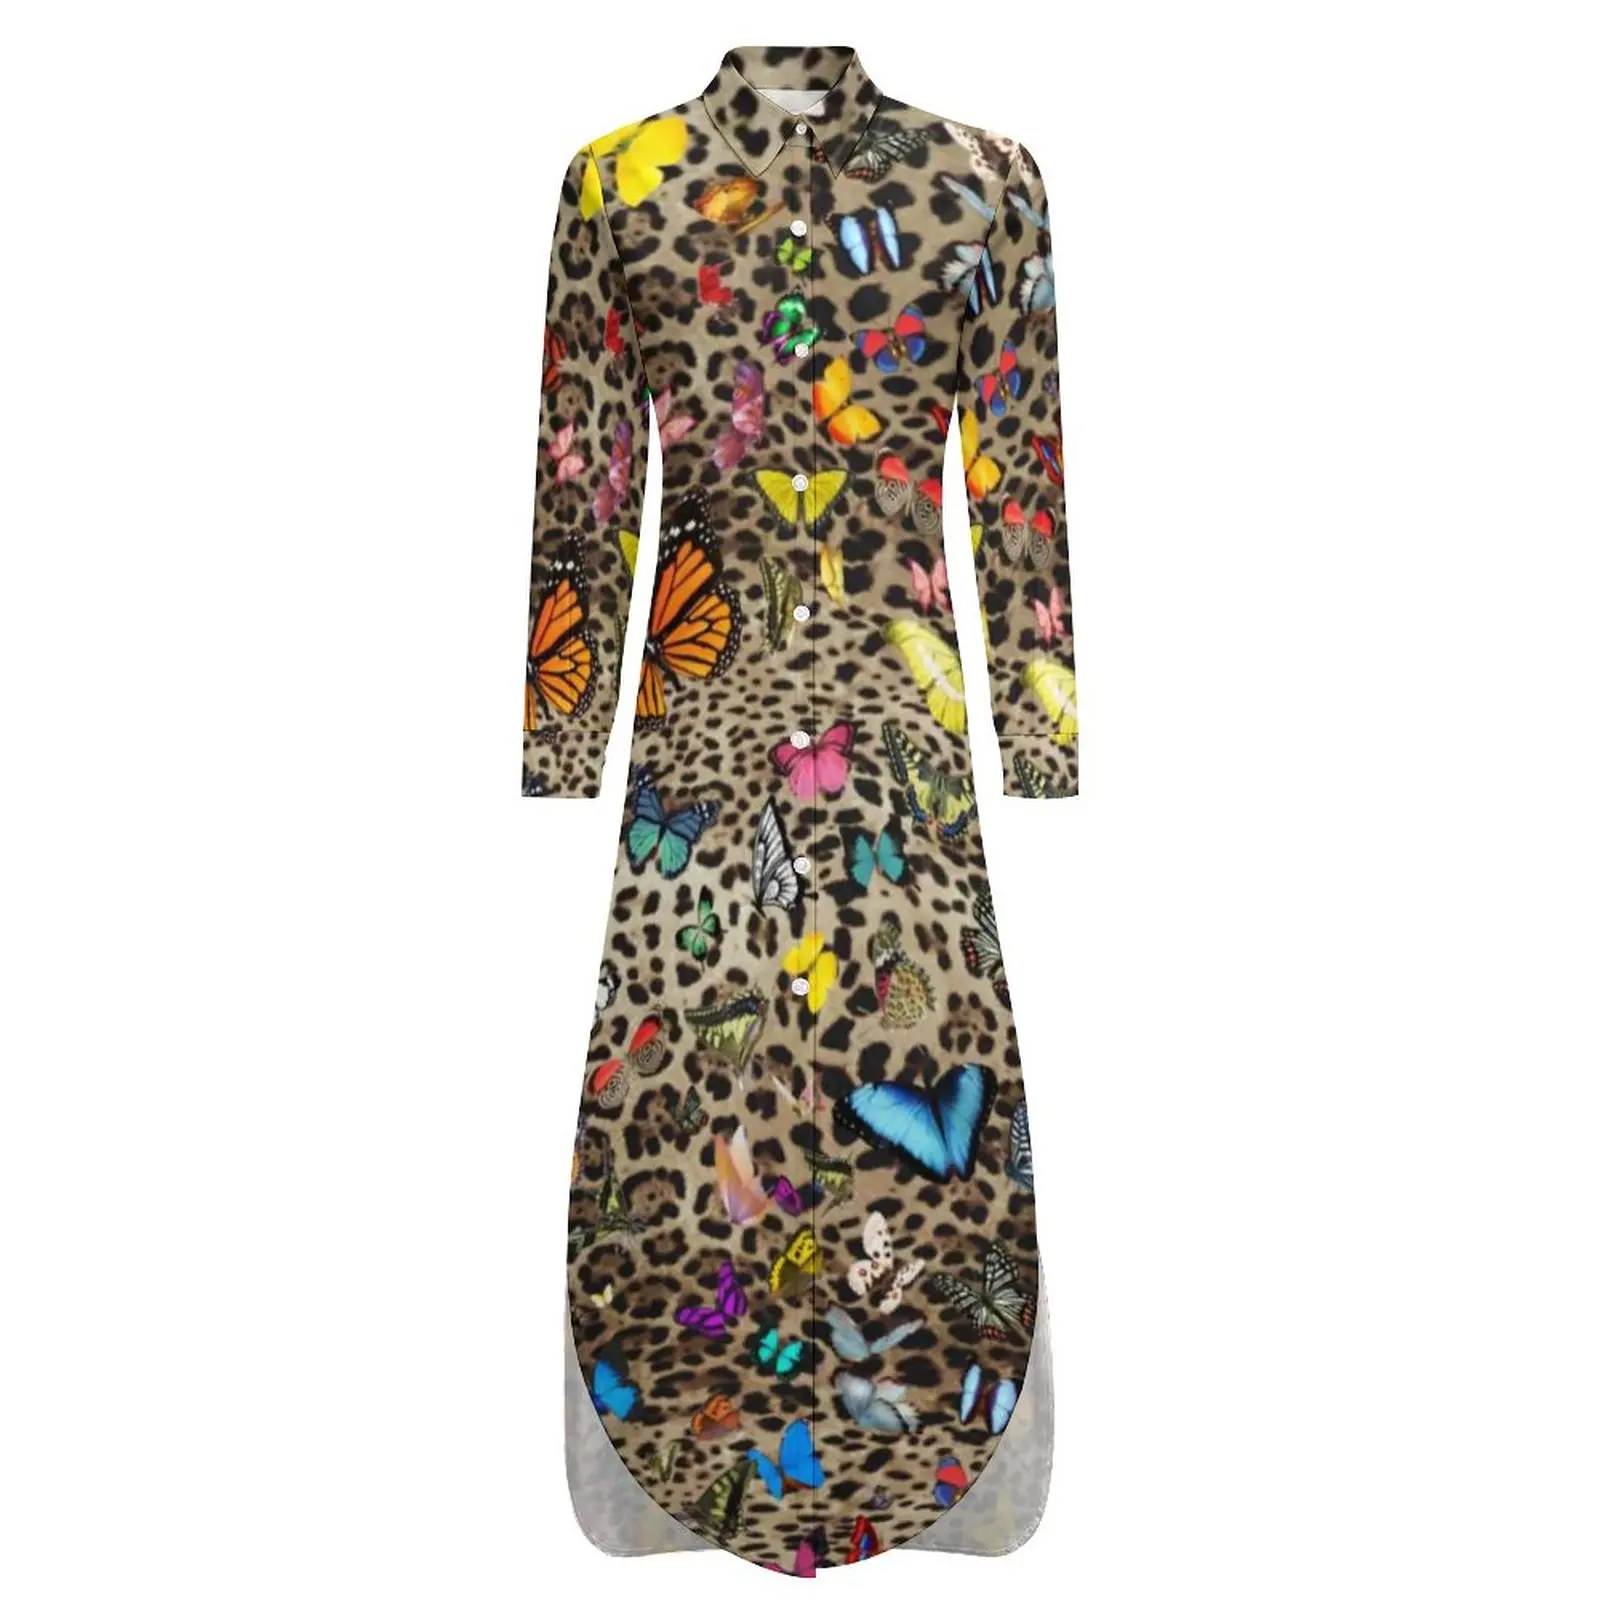 Повседневное платье с леопардовой бабочкой, бабочки с животным принтом, простые платья С длинным рукавом, Элегантное Шифоновое платье с V-образным вырезом и принтом Оверсайз 4